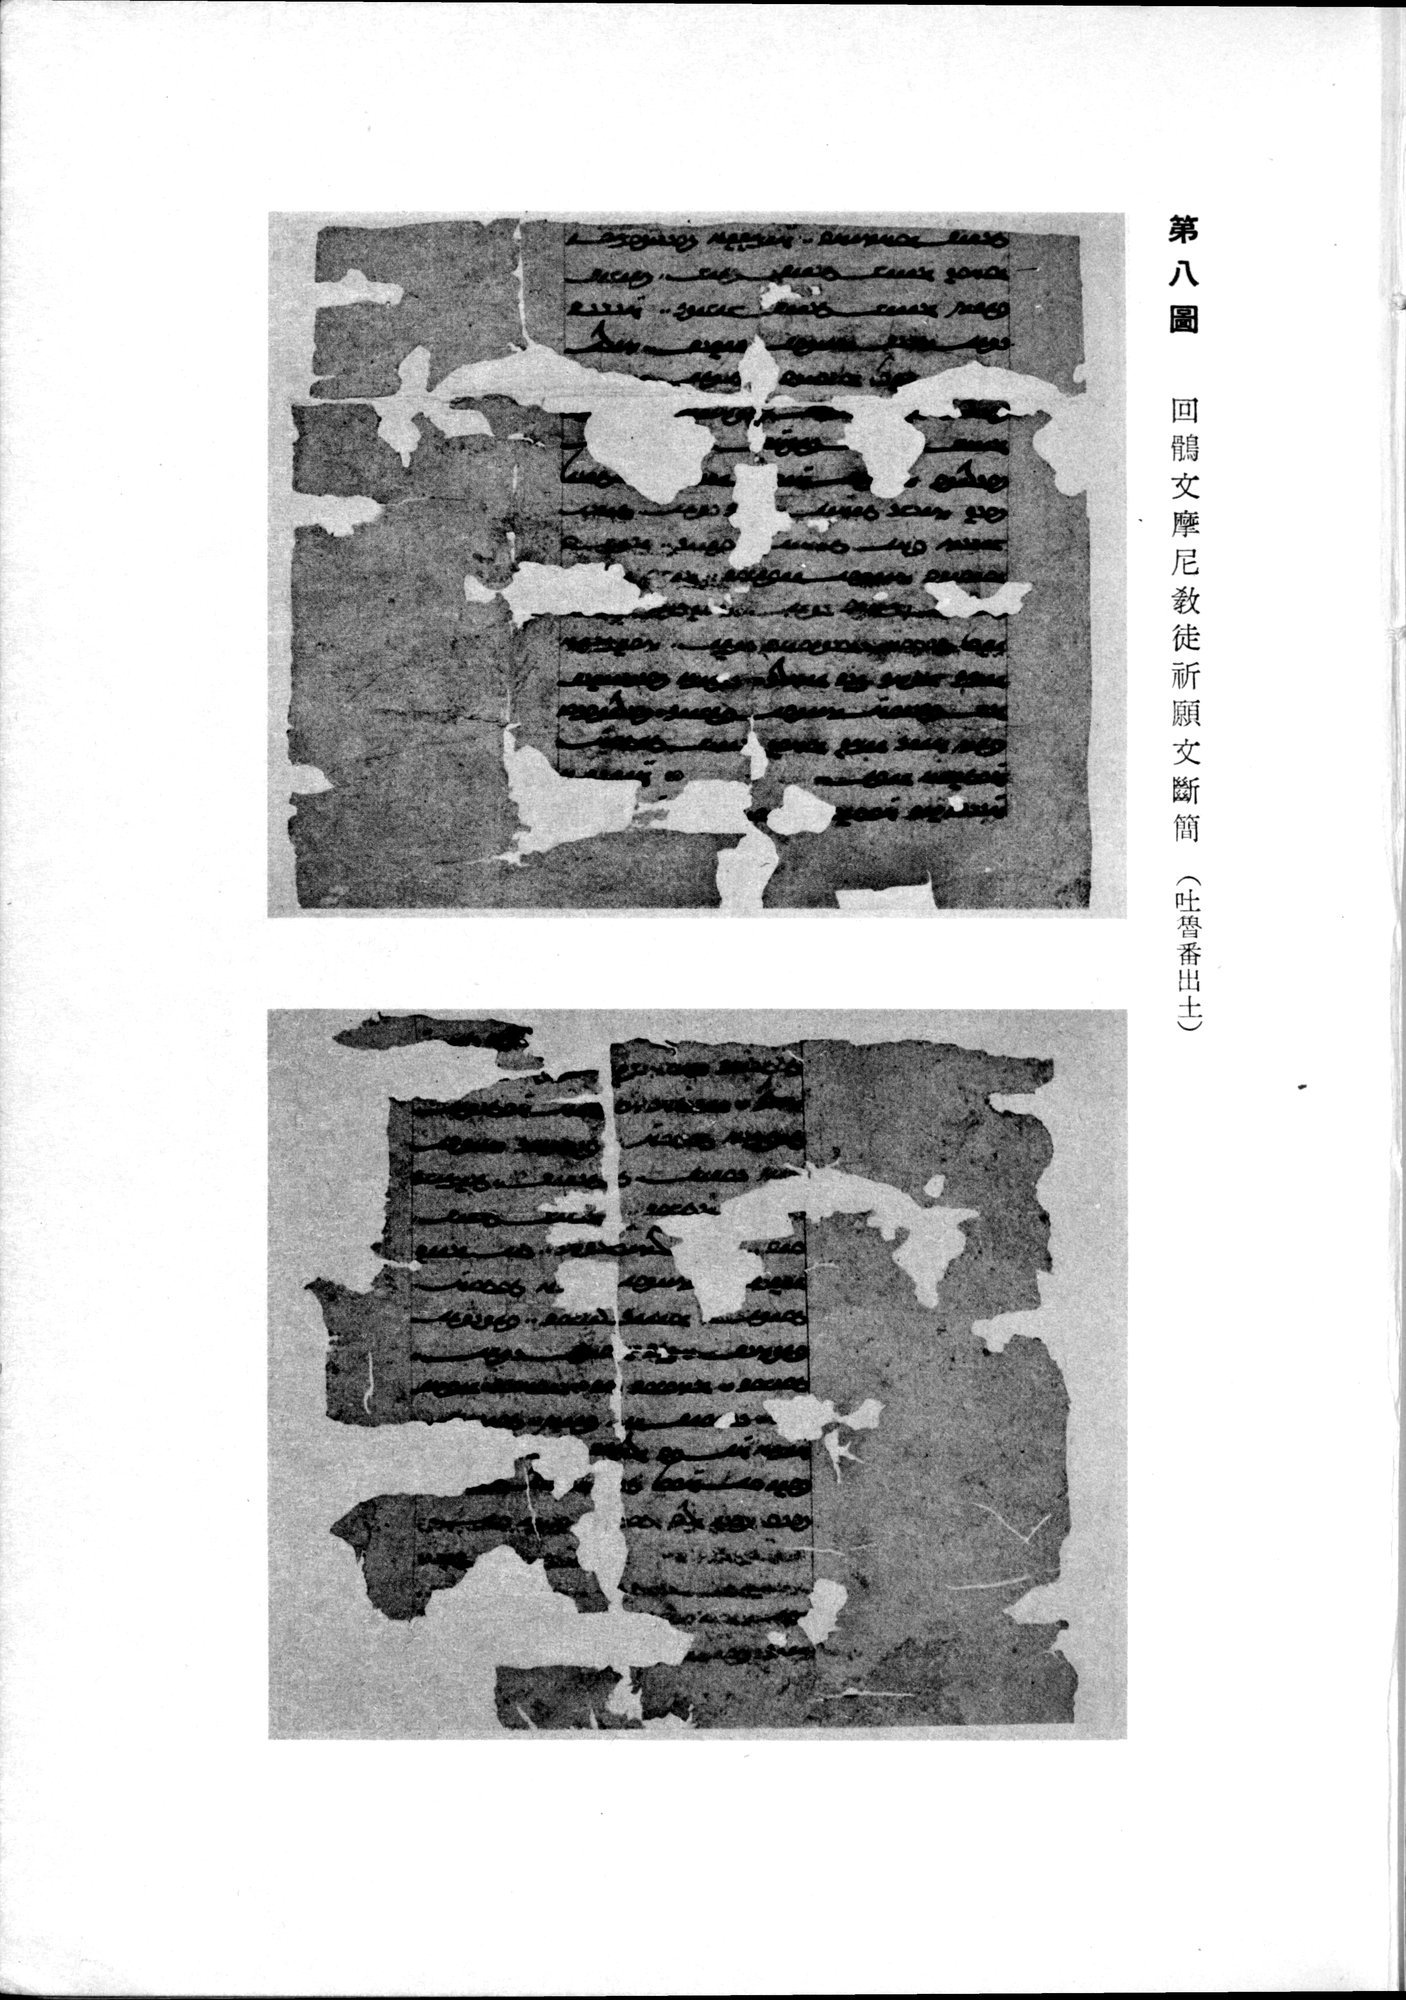 羽田博士史学論文集 : vol.2 / Page 21 (Grayscale High Resolution Image)